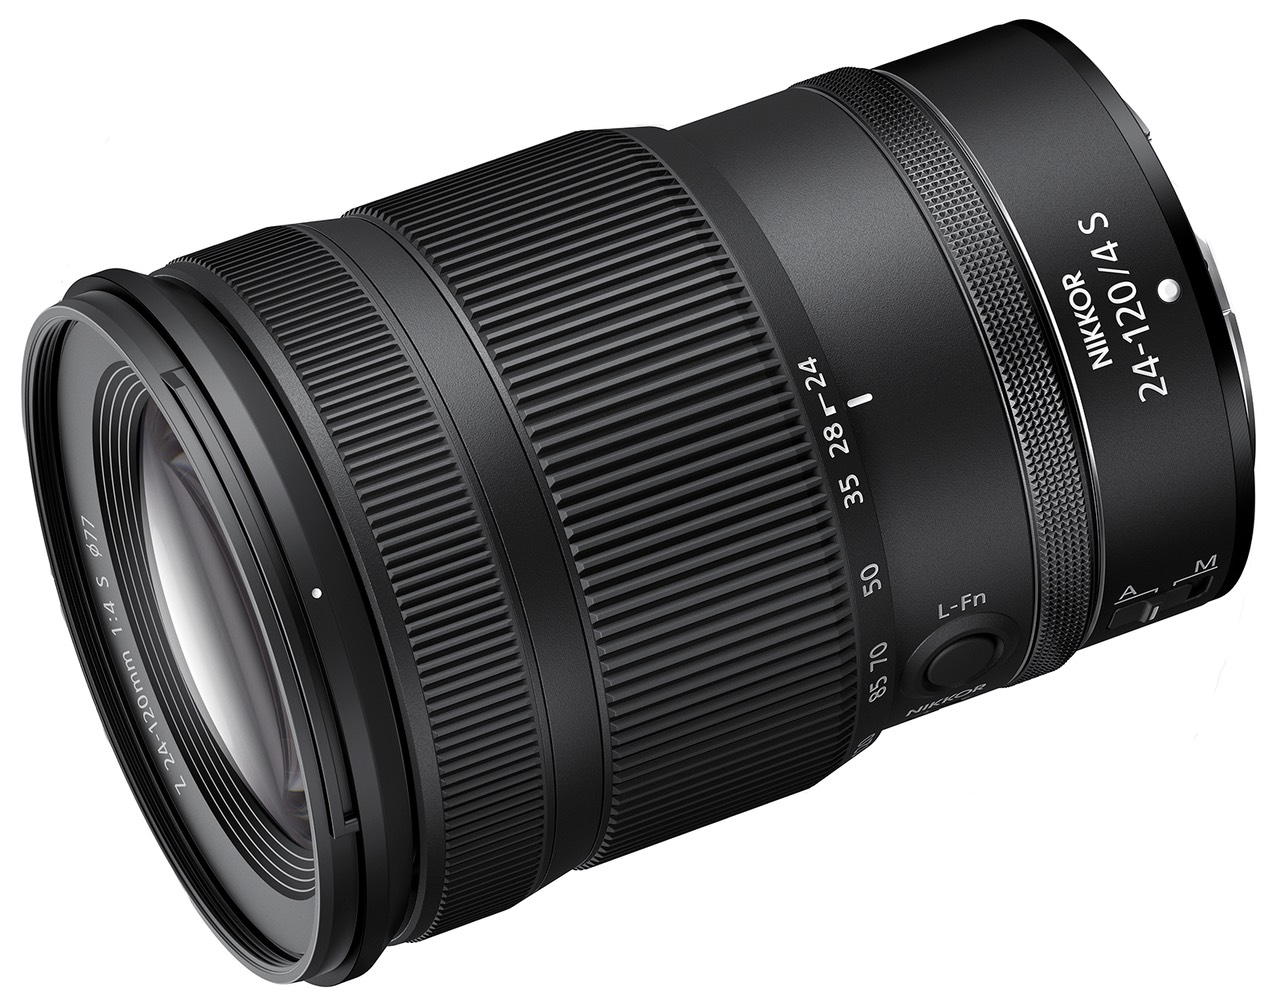 Nikon 24-120mm f/4 S Lens Review | Thom Hogan